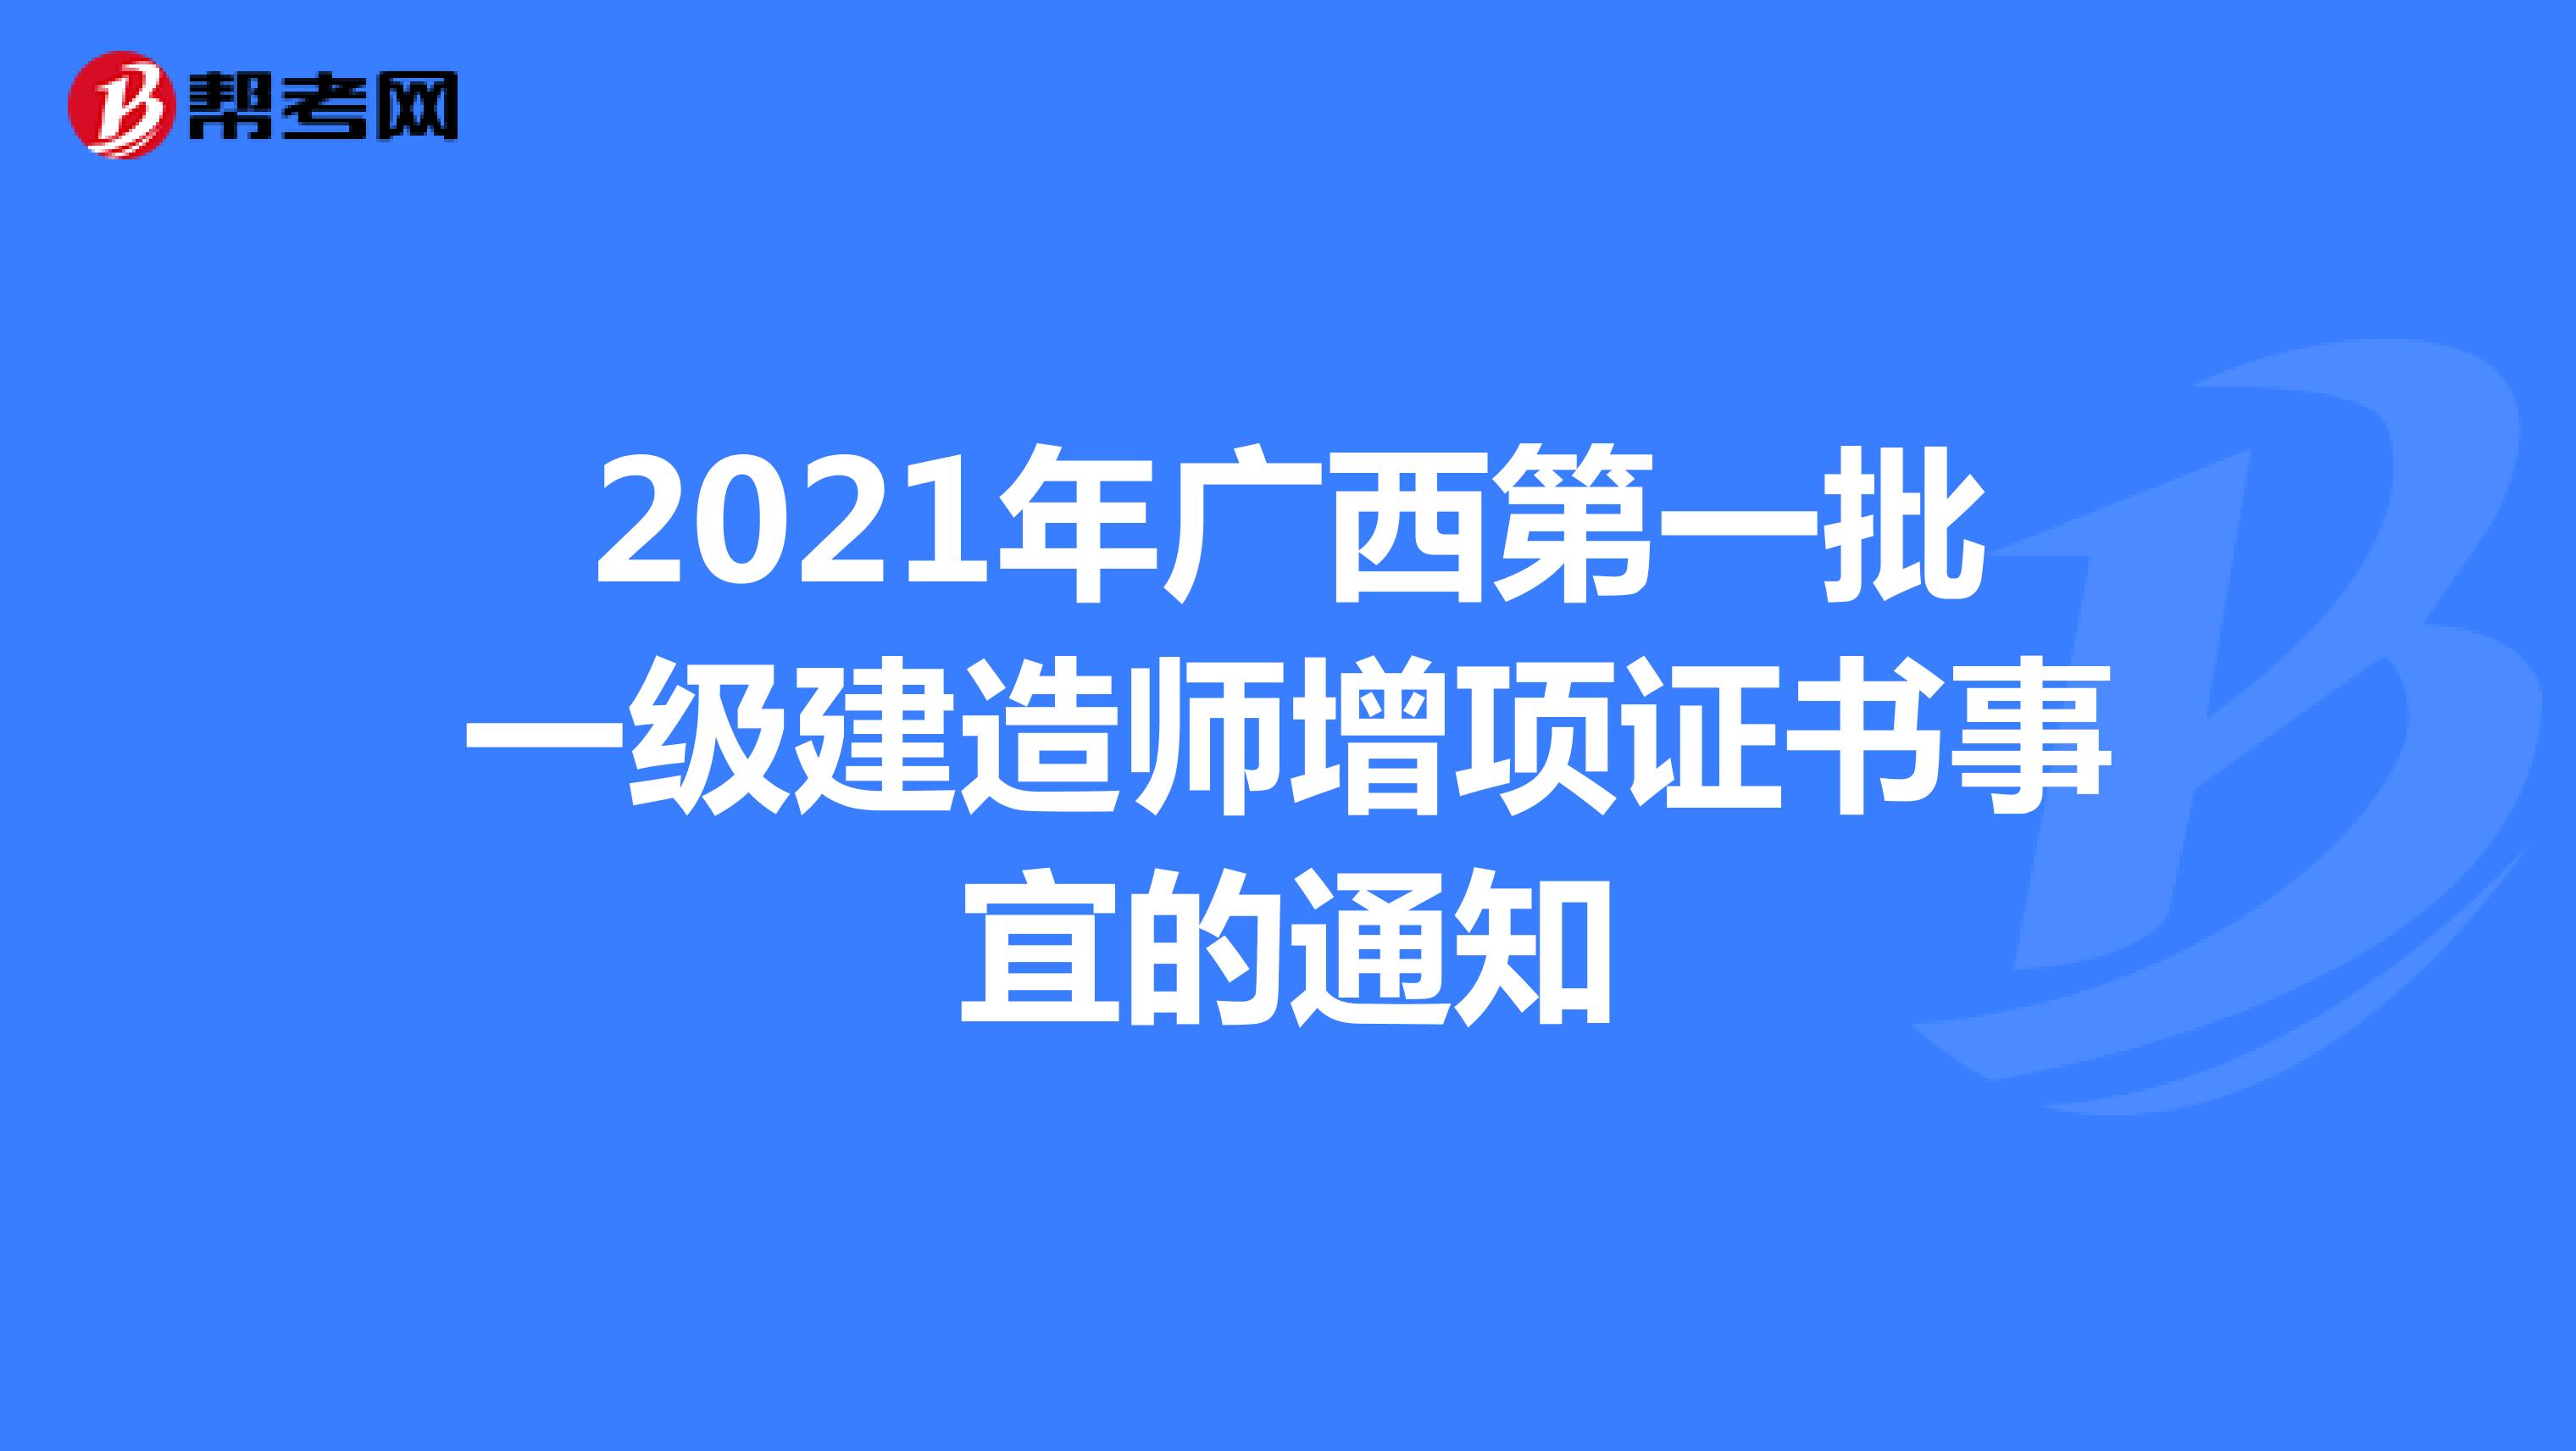 2021年广西第一批一级建造师增项证书事宜的通知